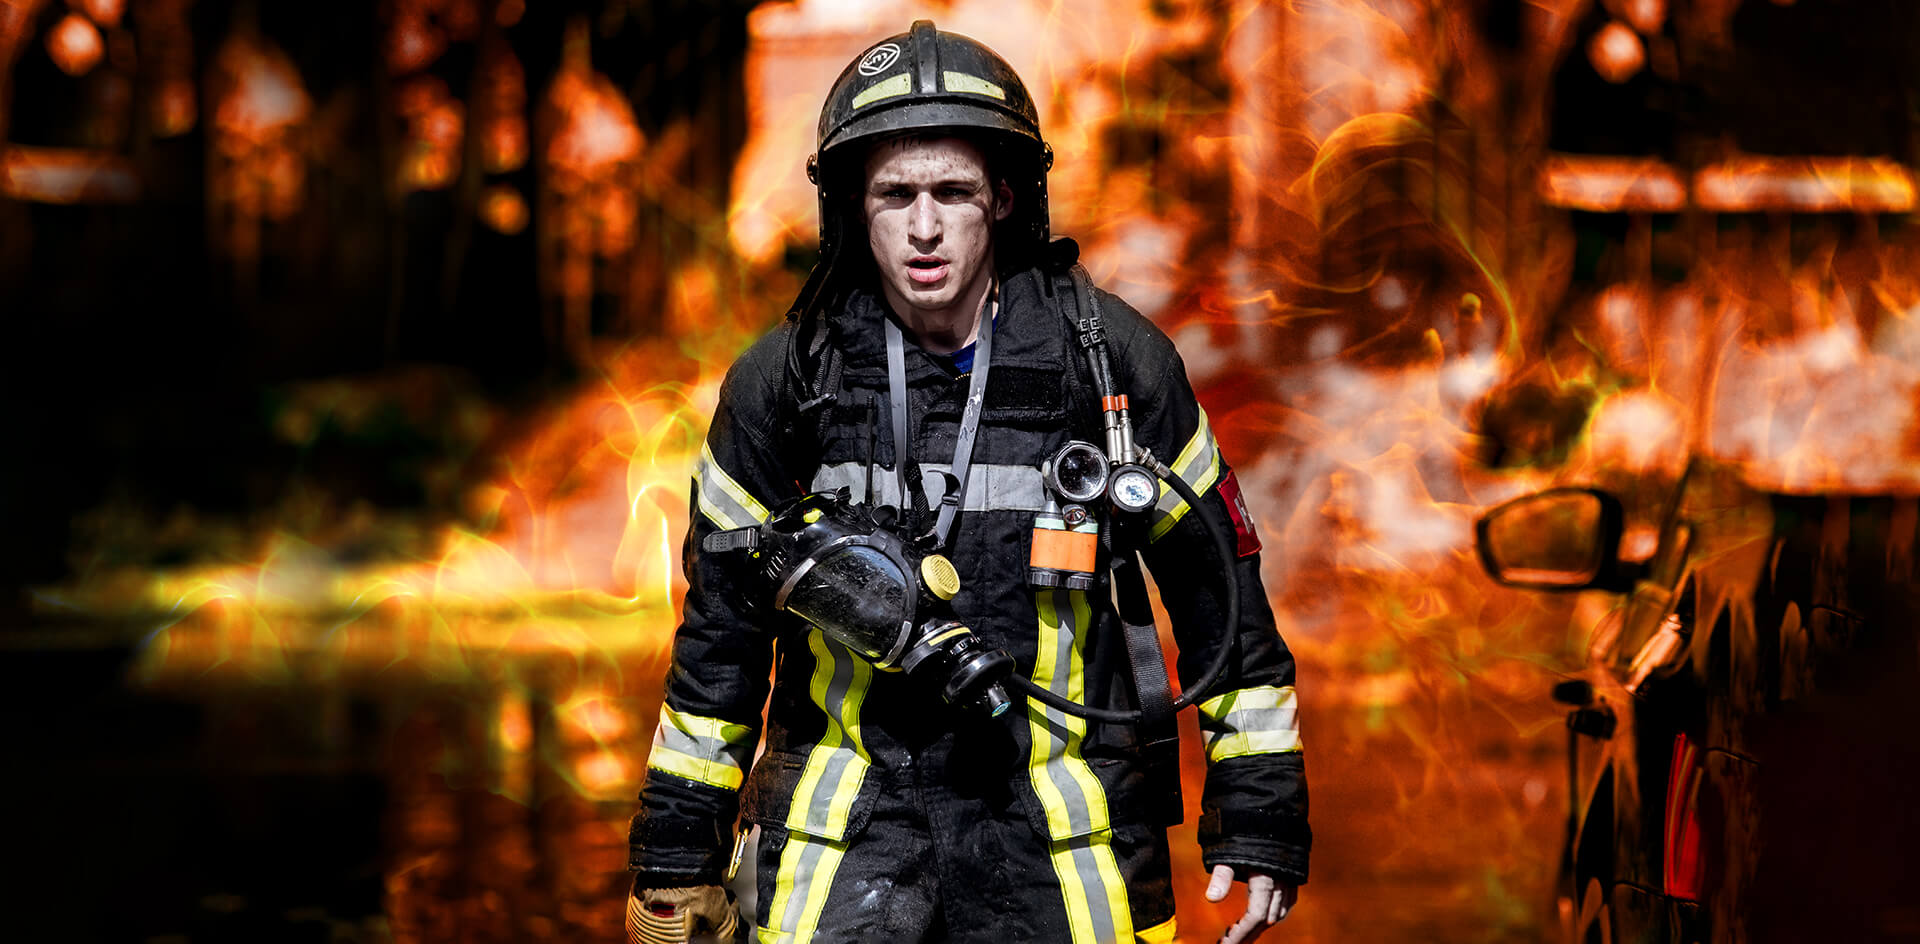 Стоимость жизни пожарных оценили в 200 тысяч рублей